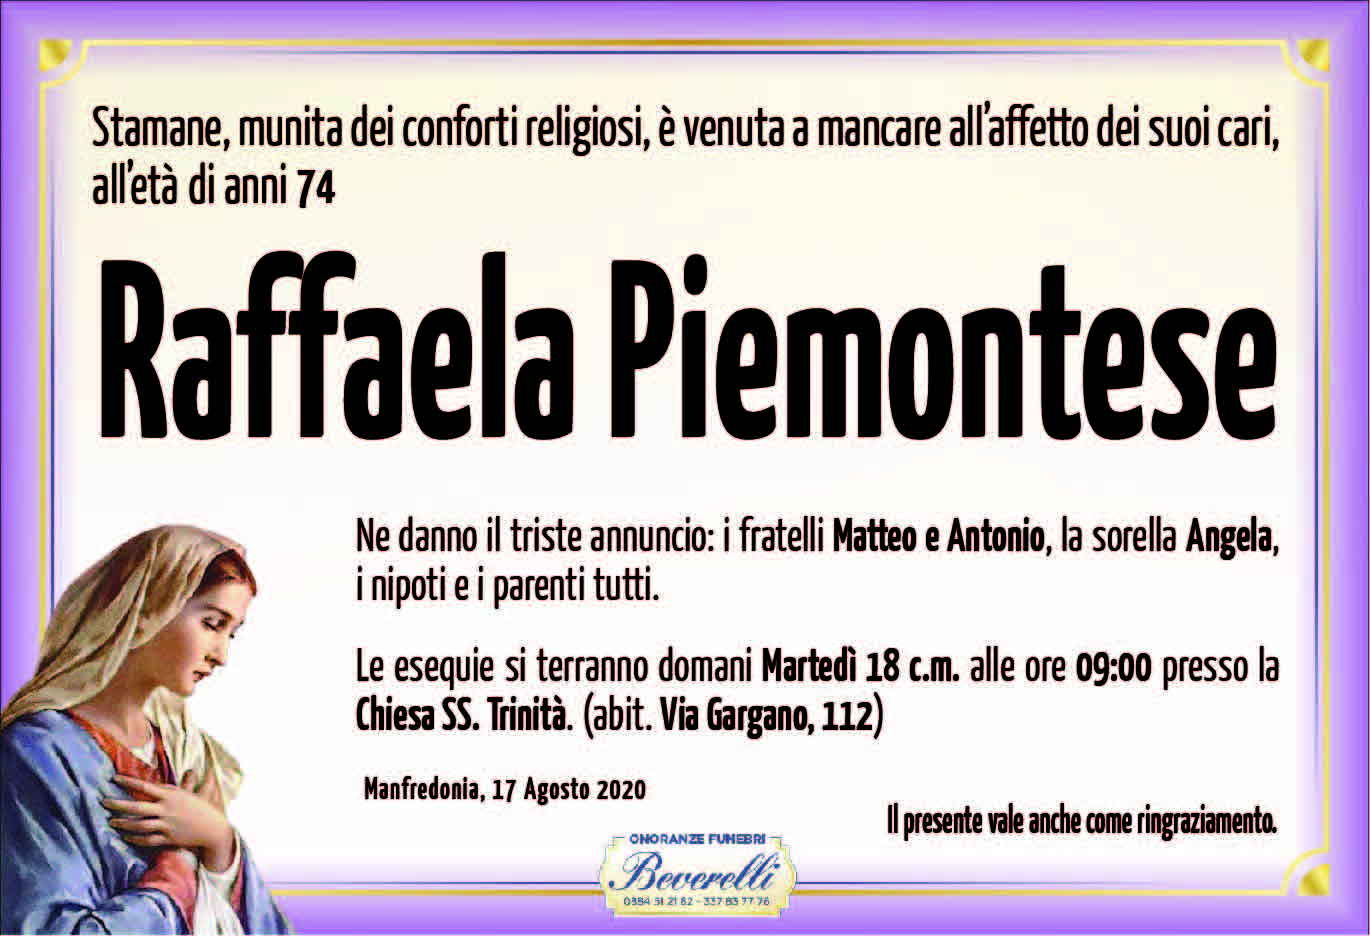 Raffaela Piemontese